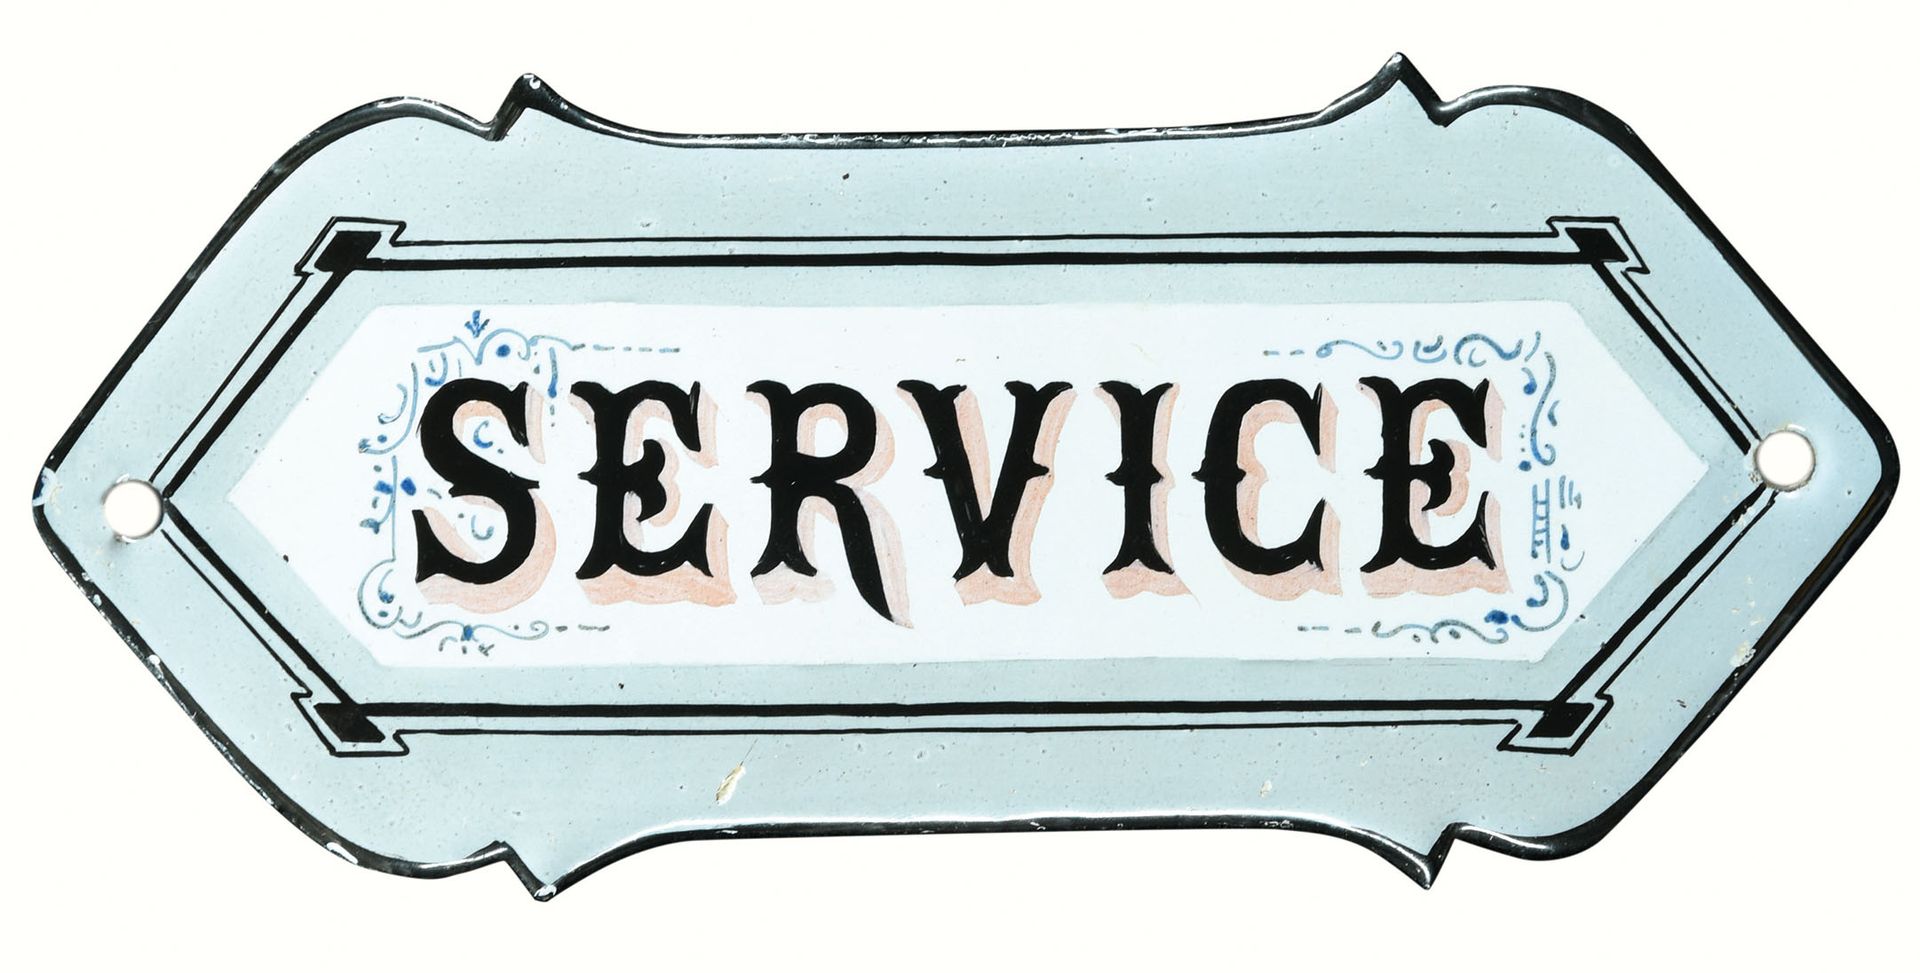 SERVICE | PLAQUE EMAILLÉE | PUBLICITÉ ANCIENNE 状态 (1+) - 搪瓷信息牌，圆顶，手工上色，约1910年，15&hellip;